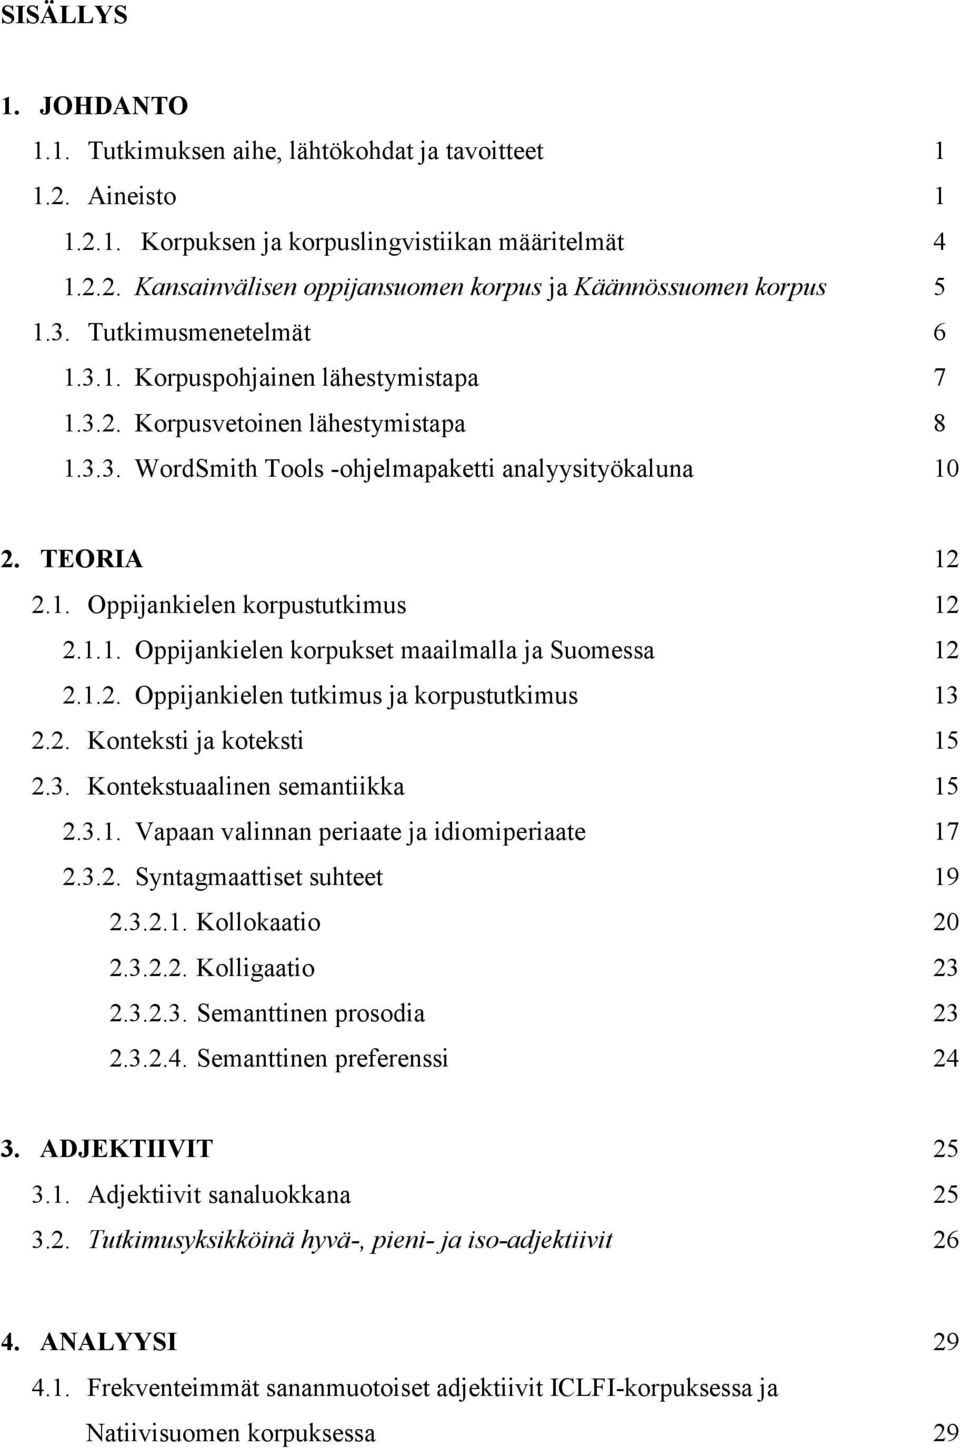 1.1. Oppijankielen korpukset maailmalla ja Suomessa 12 2.1.2. Oppijankielen tutkimus ja korpustutkimus 13 2.2. Konteksti ja koteksti 15 2.3. Kontekstuaalinen semantiikka 15 2.3.1. Vapaan valinnan periaate ja idiomiperiaate 17 2.